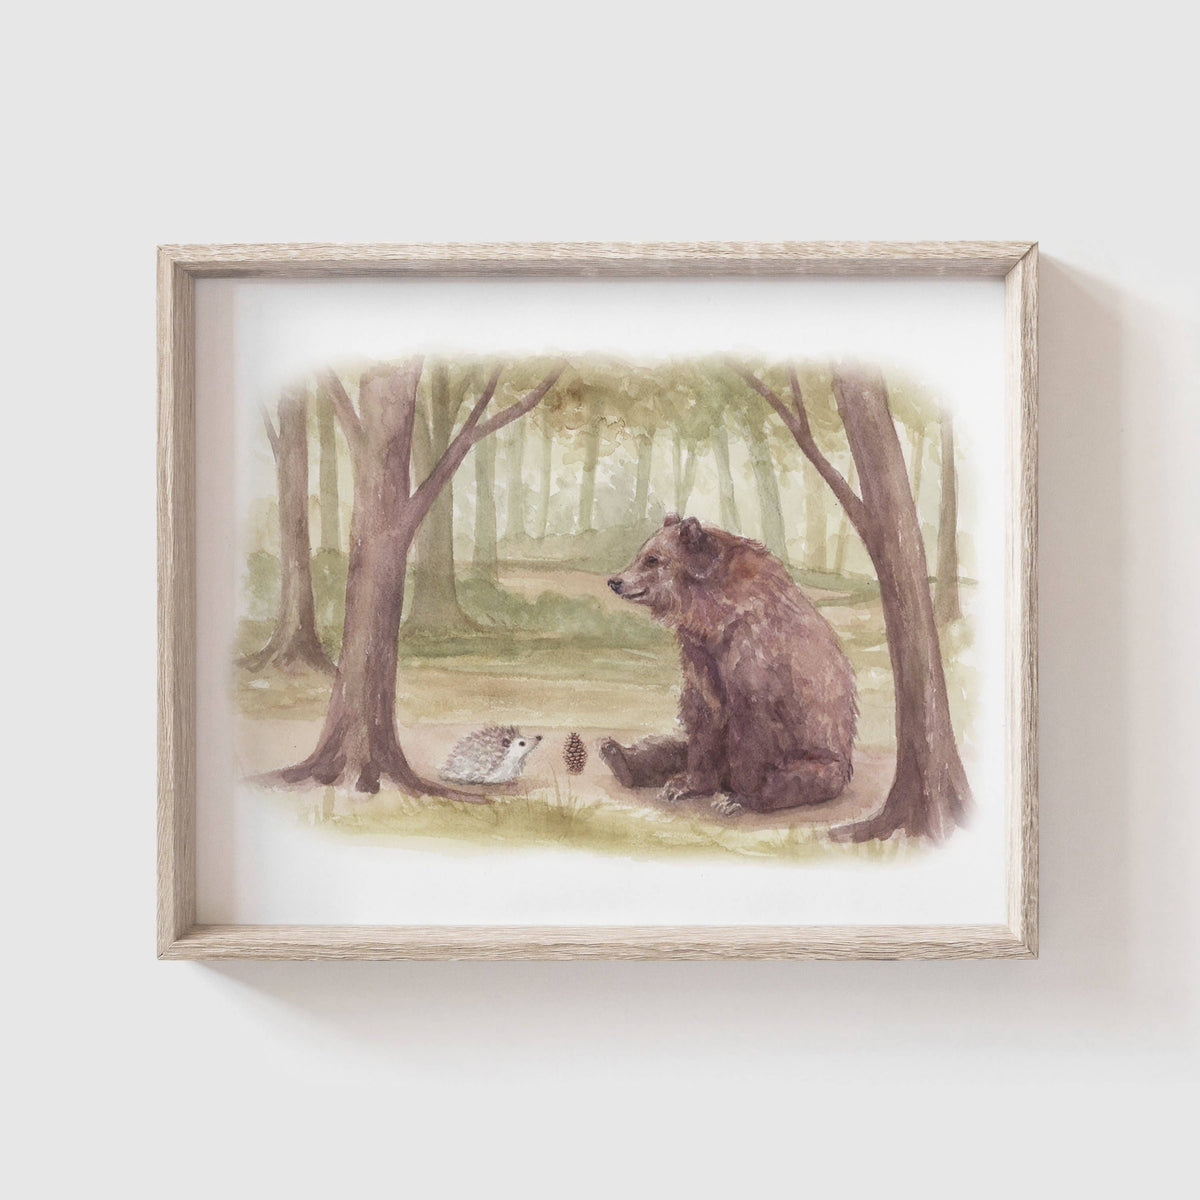 Fox Hollow Studios Giclee Print 8 x 10" (Unframed) "Hedgehog meets Bear" Art Print (Our Little Adventures)